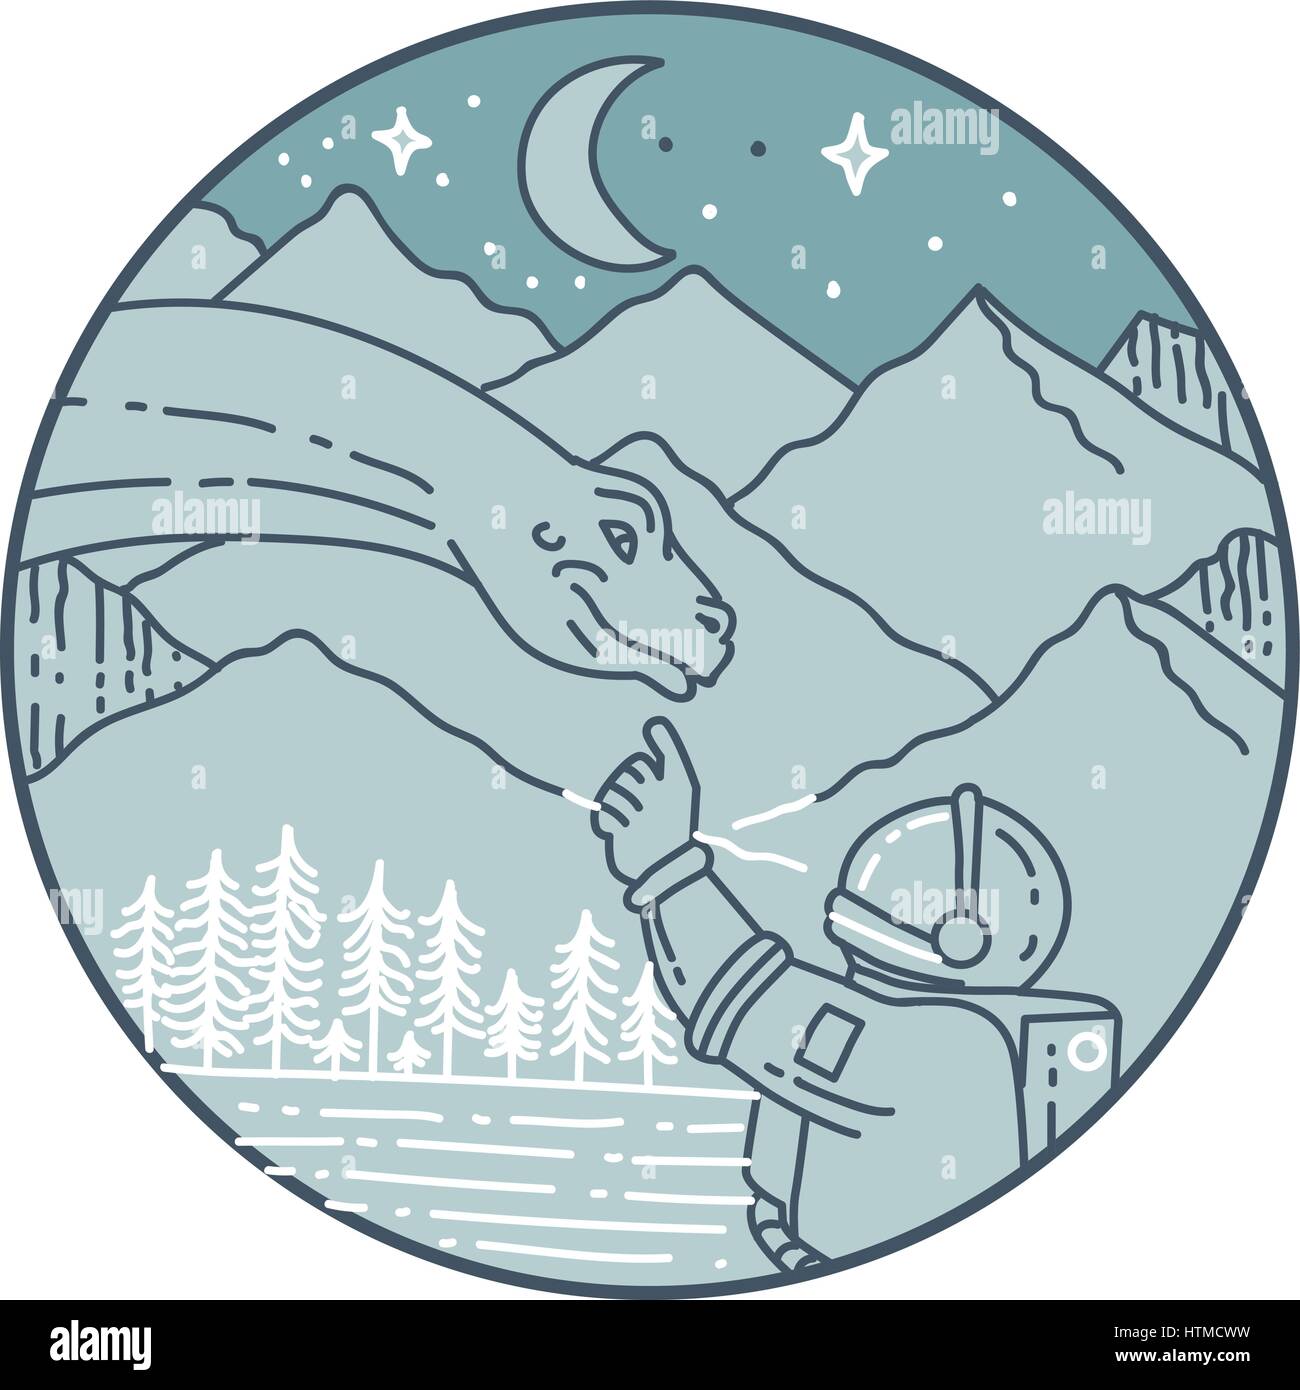 Style ligne mono illustration d'un astronaute de toucher la tête de dinosaure brontosaure mis à l'intérieur du cercle avec vue sur la montagne, la lune, les étoiles et les arbres dans le background Illustration de Vecteur